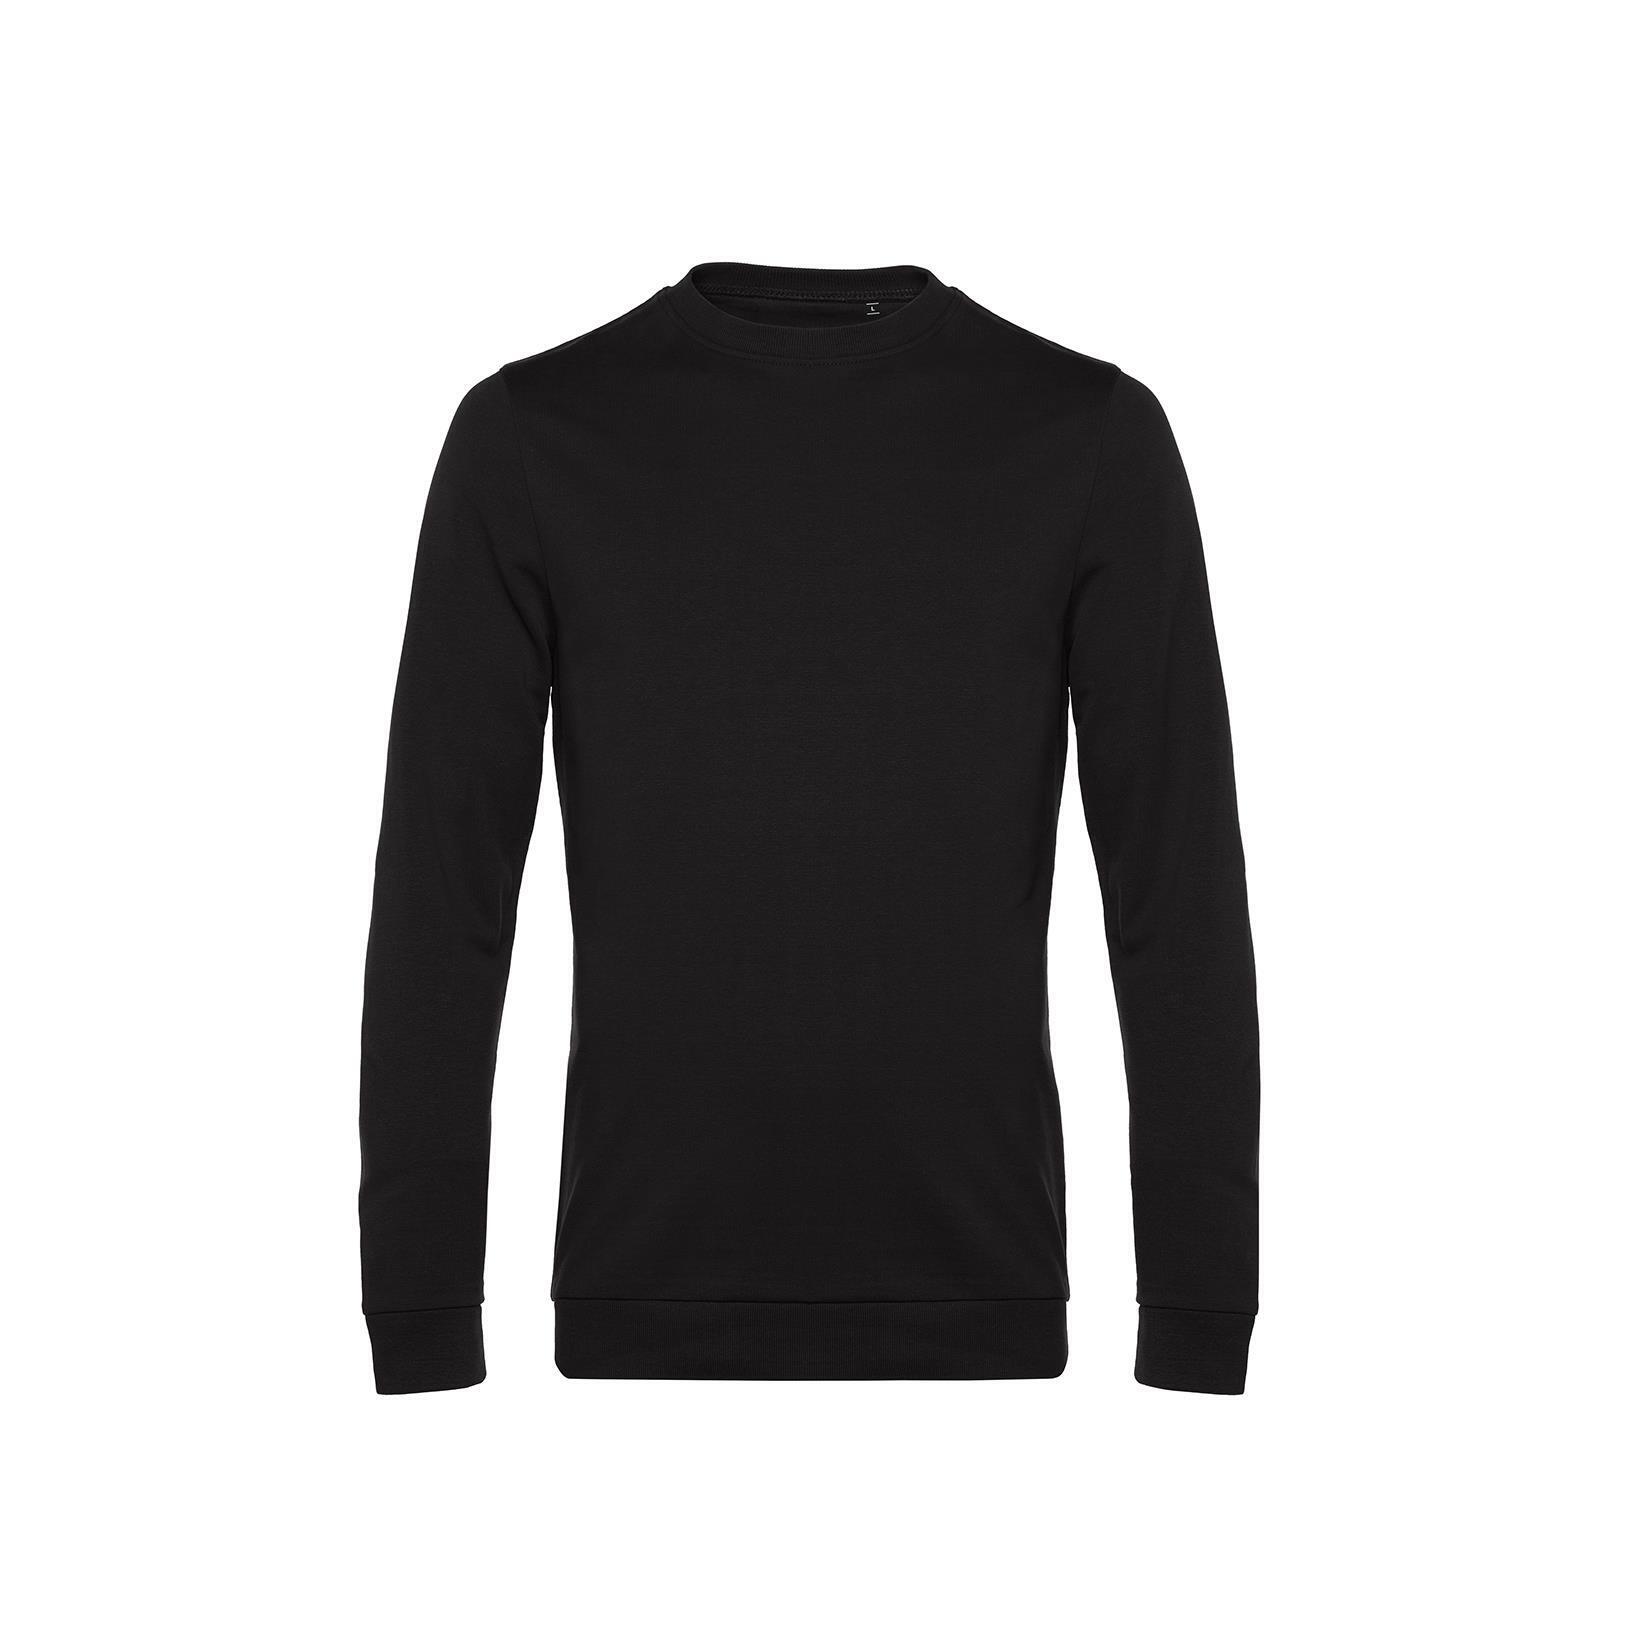 Zwarte Trendy Sweater sweatshirt trui unisex heren